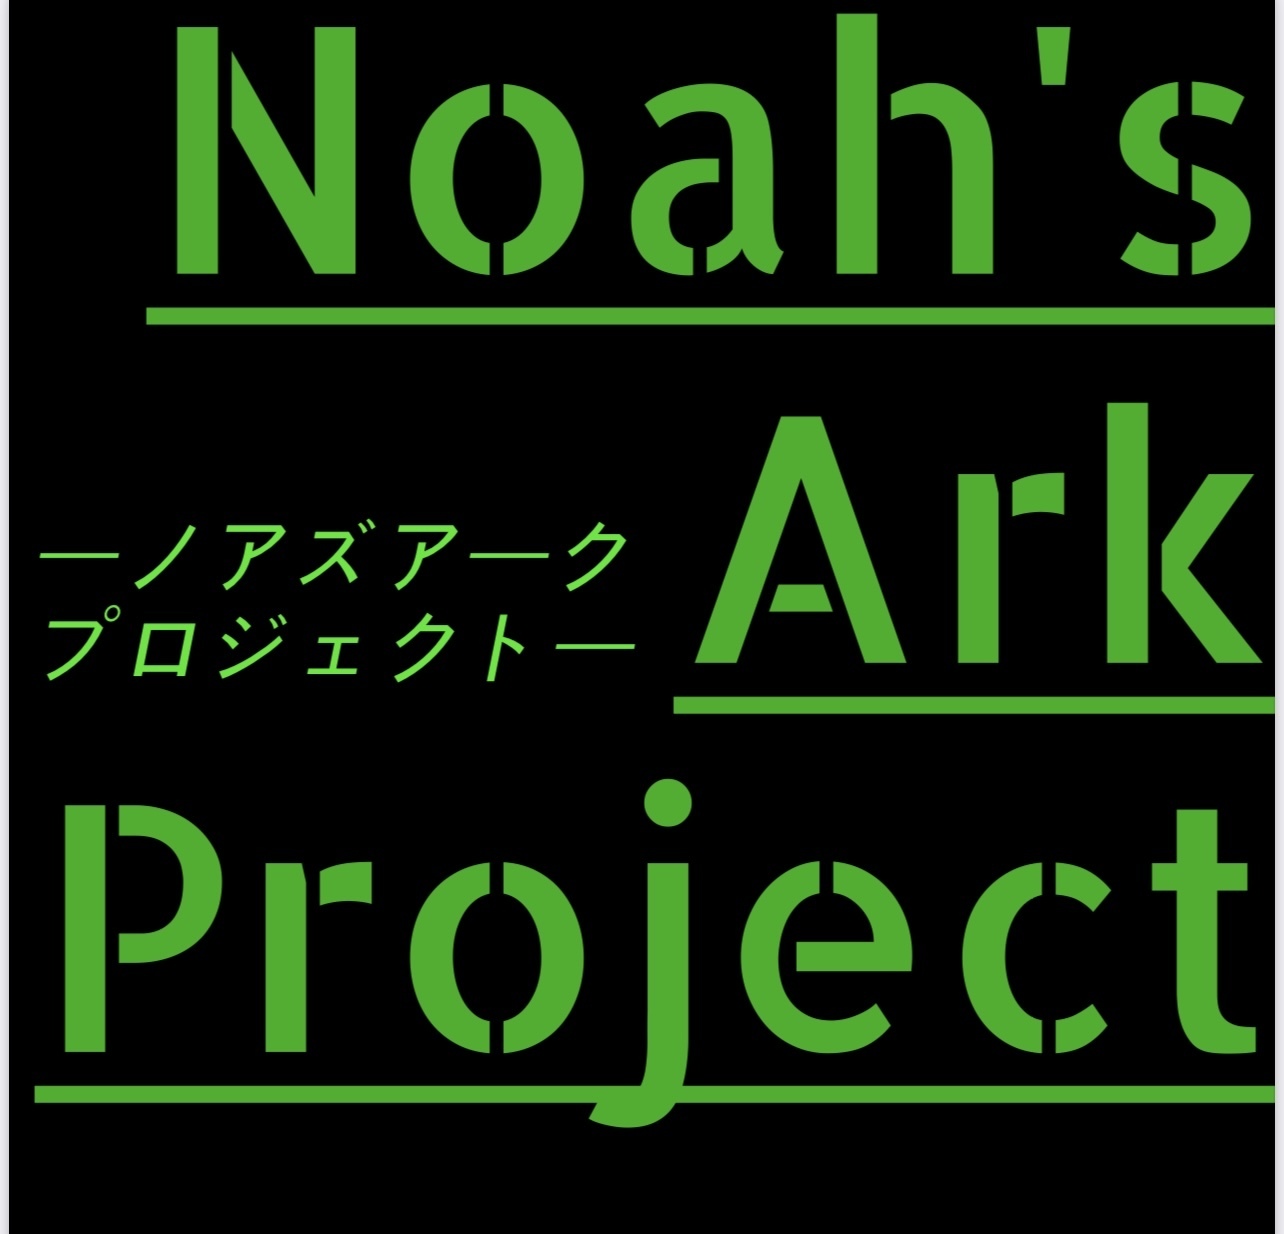 Noah's Ark project